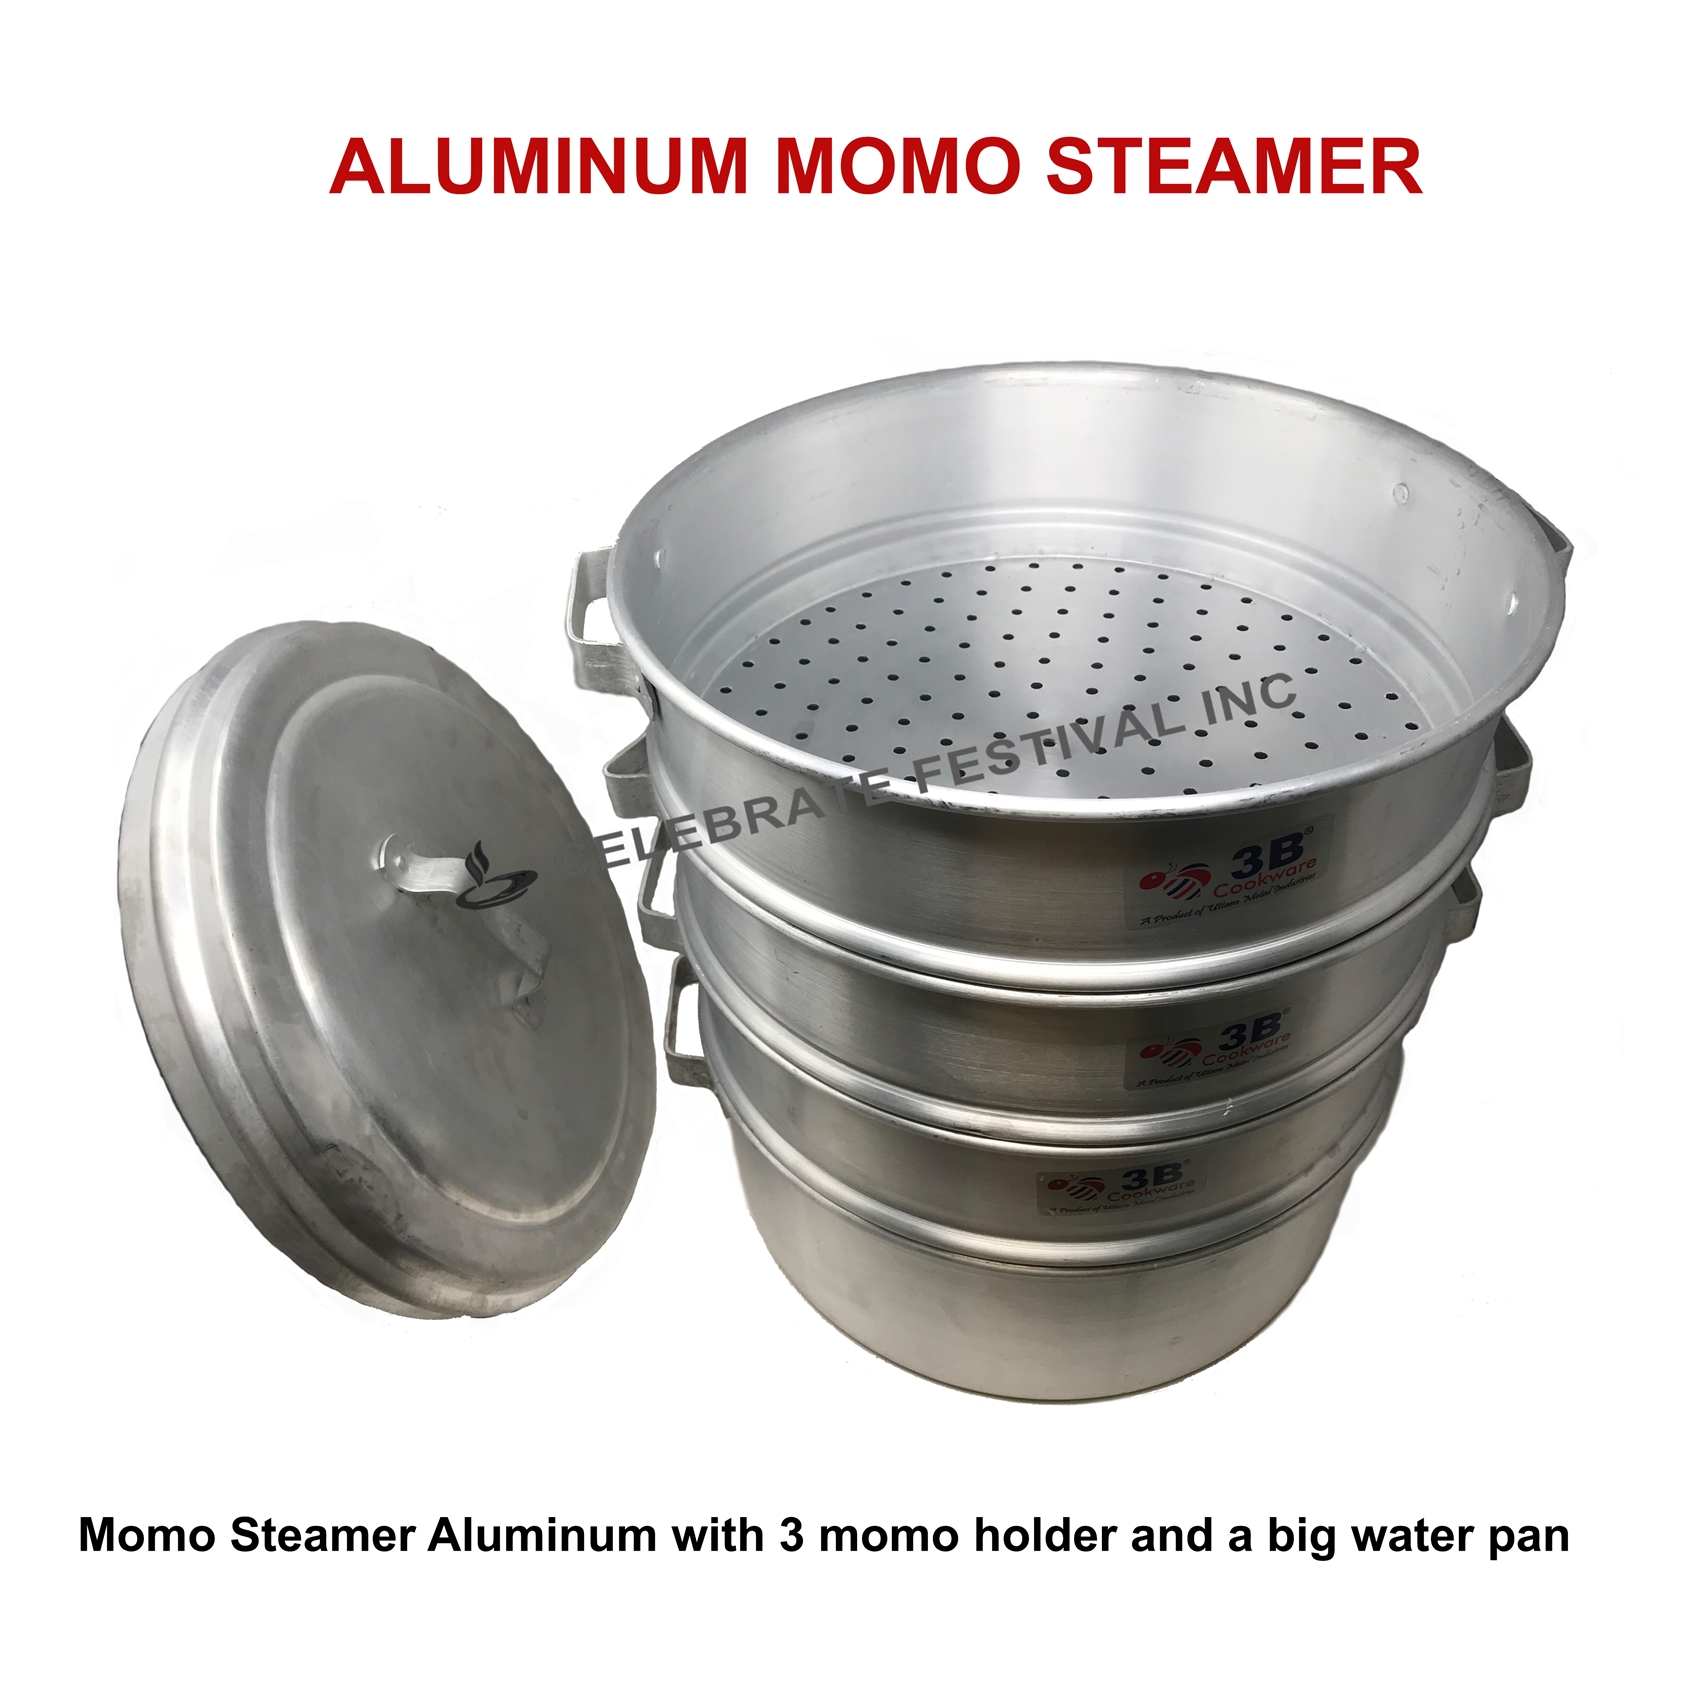 Momo Steamer Aluminum 16